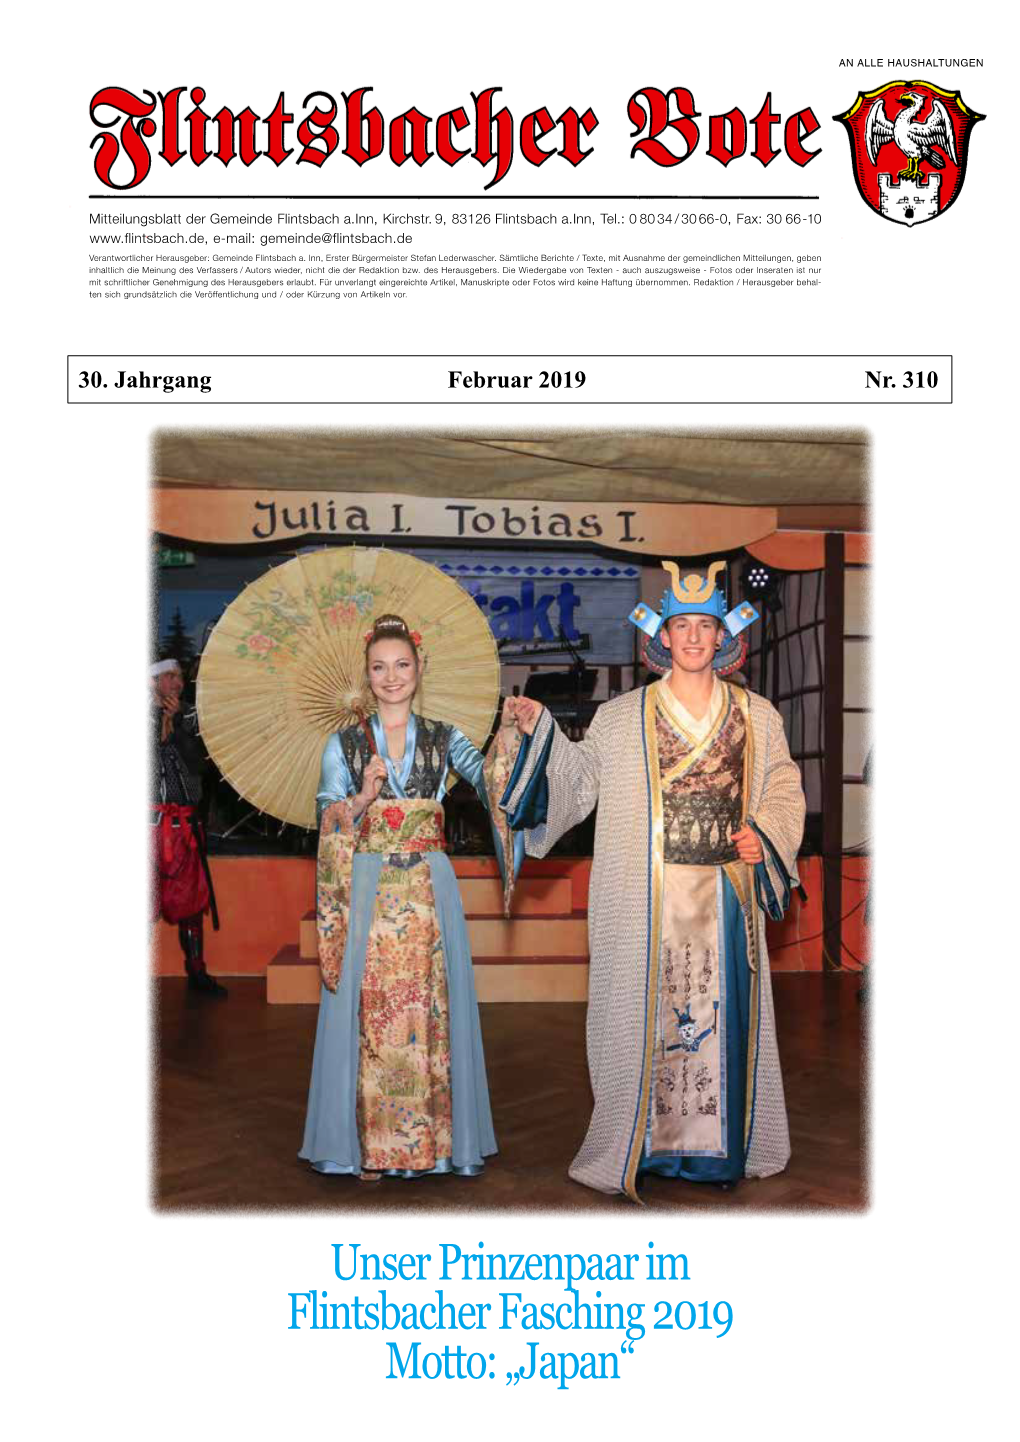 Unser Prinzenpaar Im Flintsbacher Fasching 2019 Motto: „Japan“